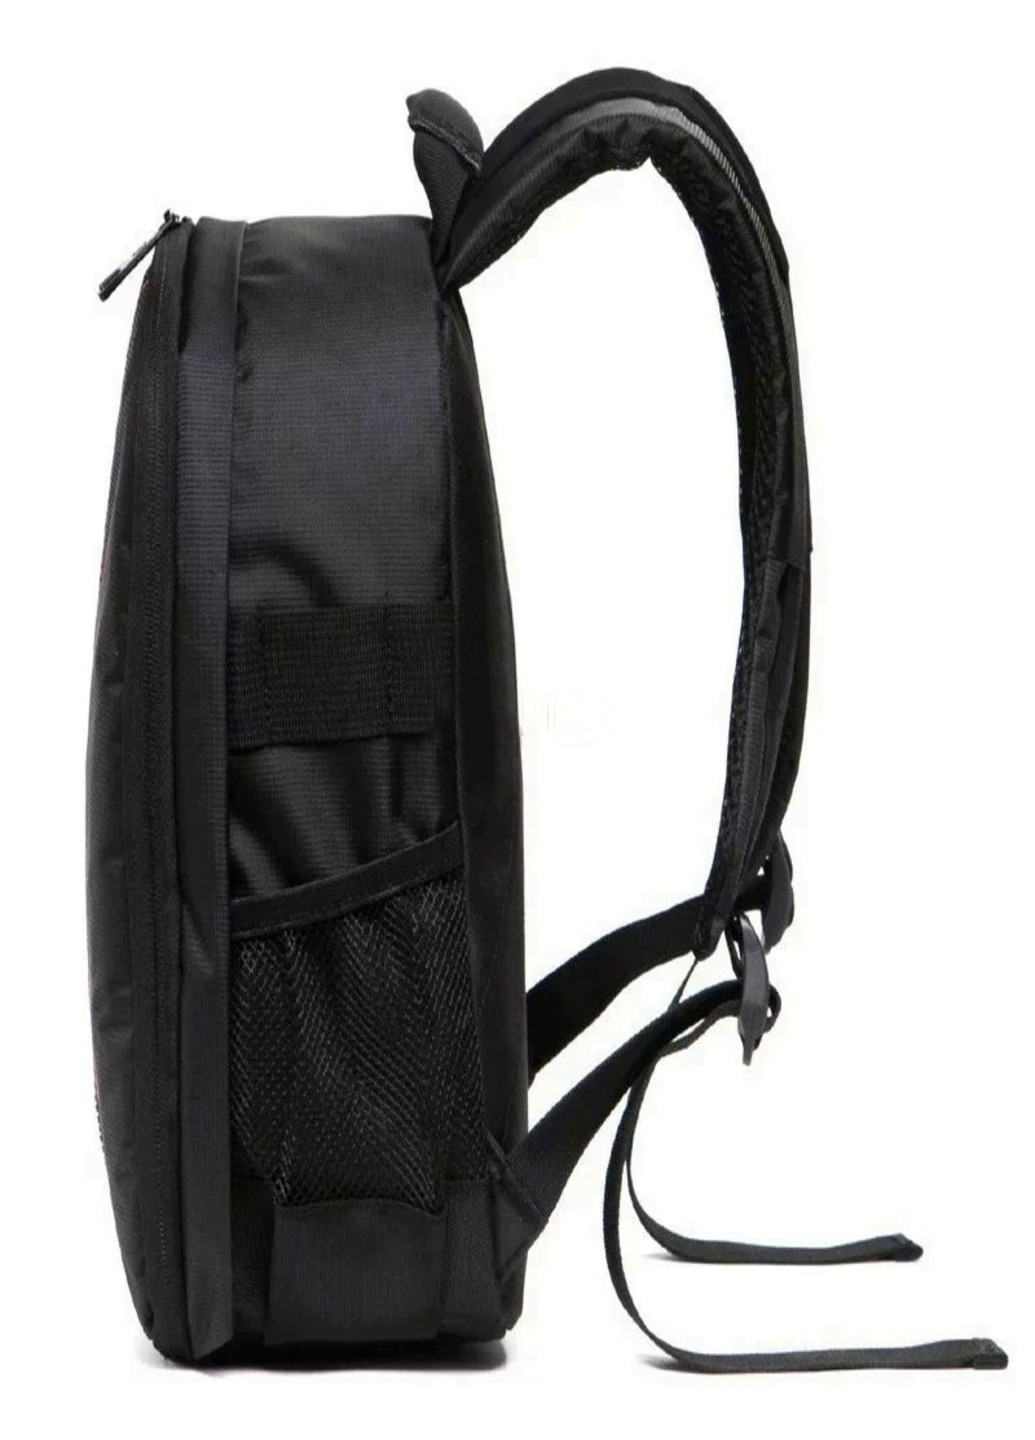 Водонепроницаемый фоторюкзак профессиональный рюкзак для зеркального фотоаппарата камеры (02569856) Francesco Marconi (205106712)